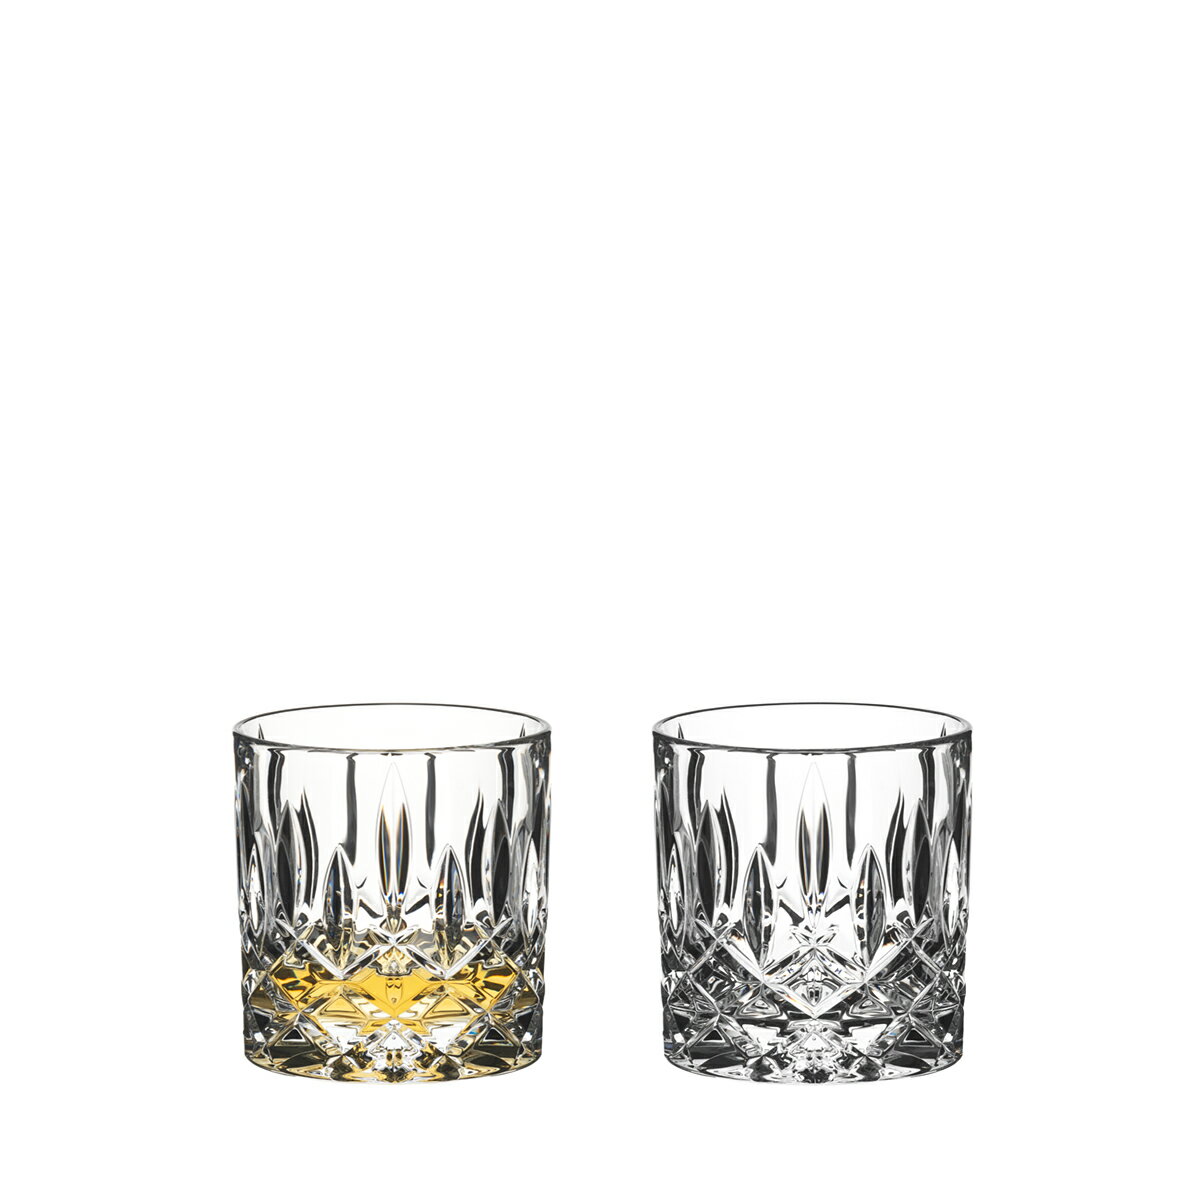 リーデル公式 タンブラーコレクション リーデル スペイ シングル・オールド ファッションド 2個入 0515/01S3 ラッピング無料 RIEDEL タンブラー ステムレス カクテル Whisky